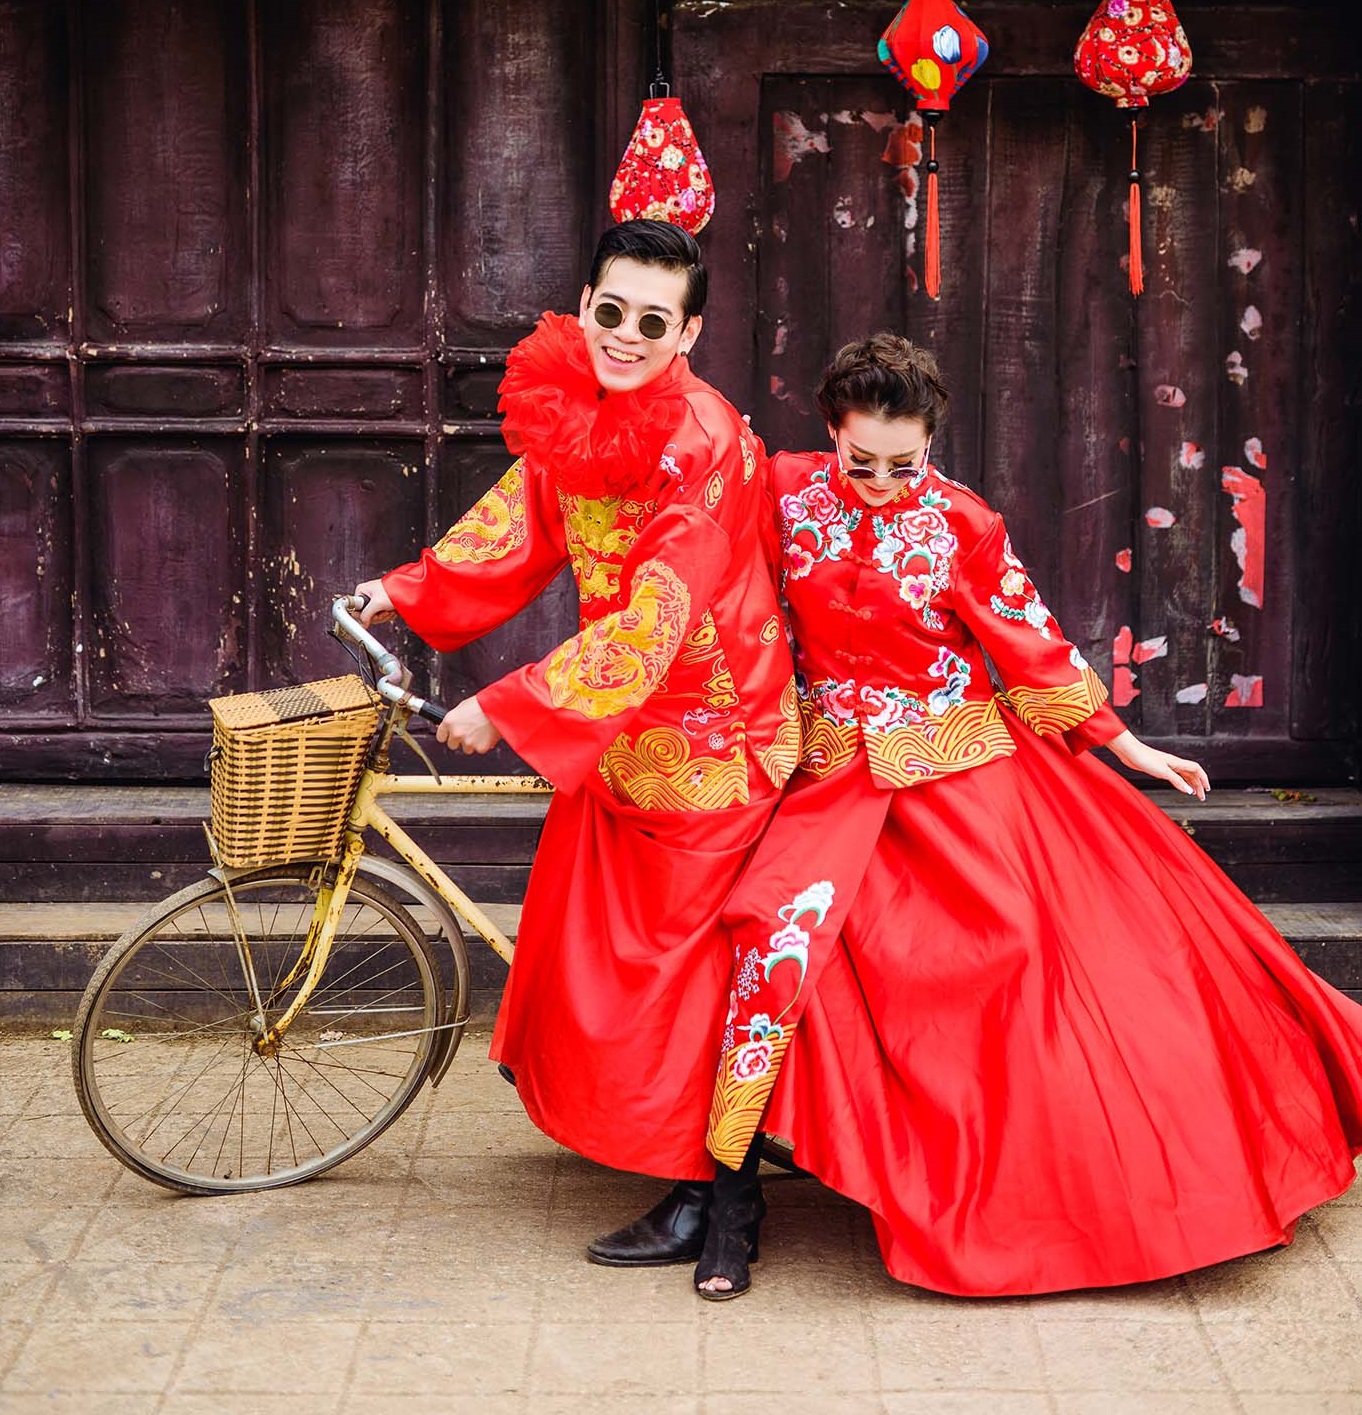 Chụp ảnh cưới theo kiểu Trung Quốc sẽ là một trải nghiệm khó quên đối với bất kỳ cặp đôi nào. Không chỉ là sự kết hợp giữa ánh sáng và kỹ thuật chụp ảnh tuyệt vời, mà kiểu chụp ảnh này còn mang lại cho bạn và người yêu một không gian cổ điển, đậm chất Trung Hoa, giúp bạn có thêm nhiều kỷ niệm đáng nhớ trên con đường tình yêu của mình.